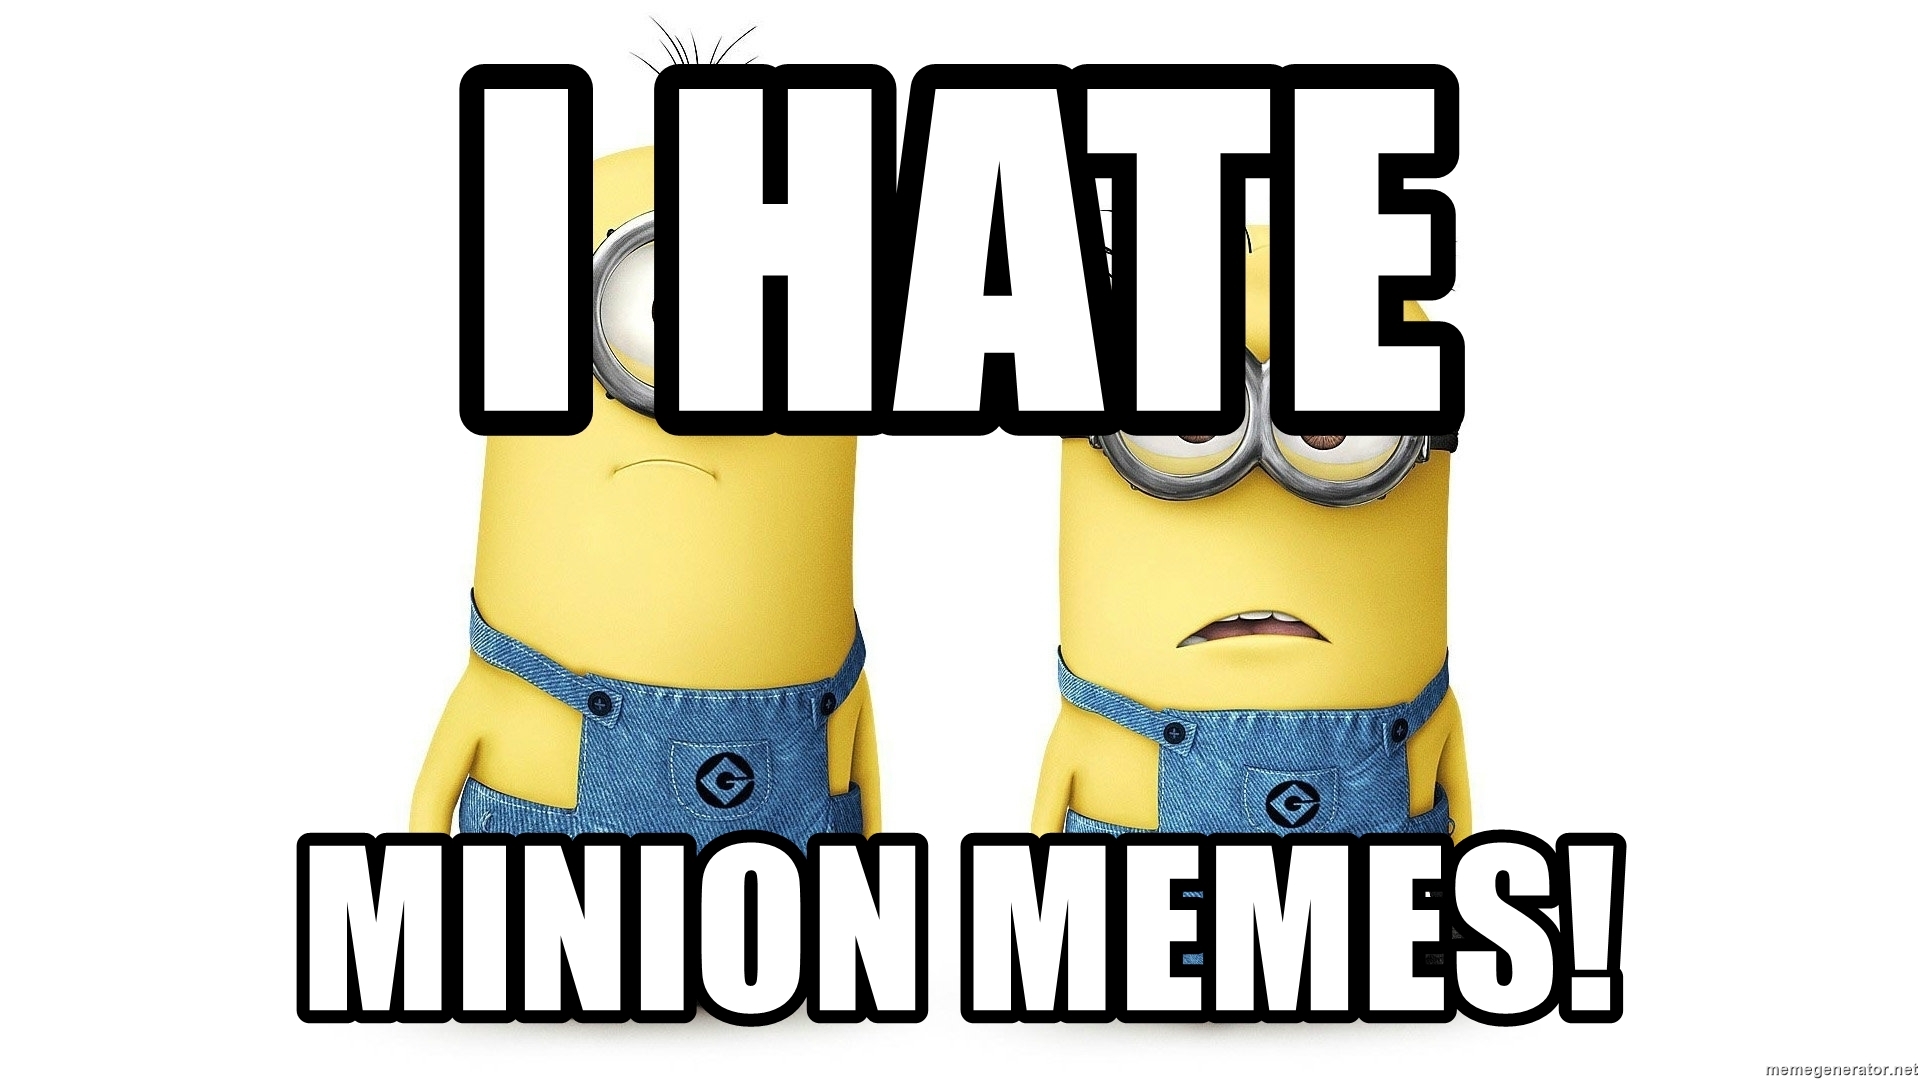 I hate minion memes!